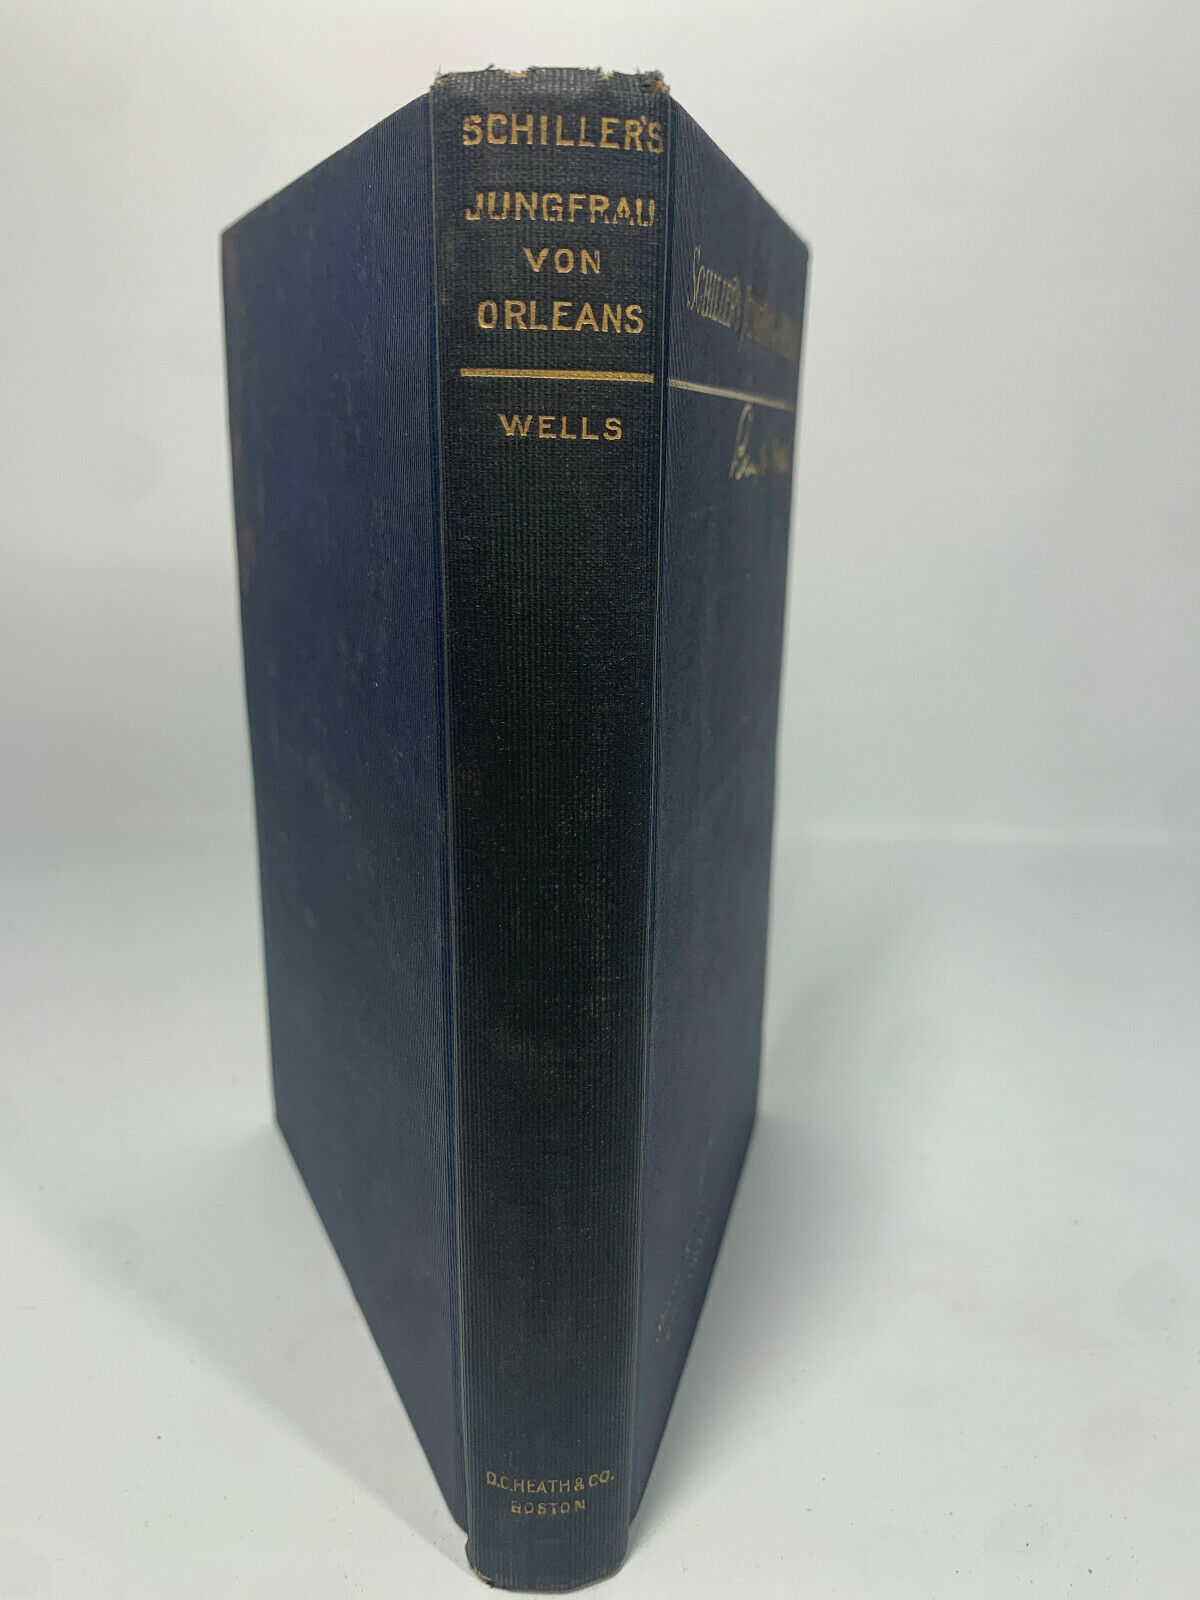 Schiller’s Jungfrau Von Orleans (written in German) 1901